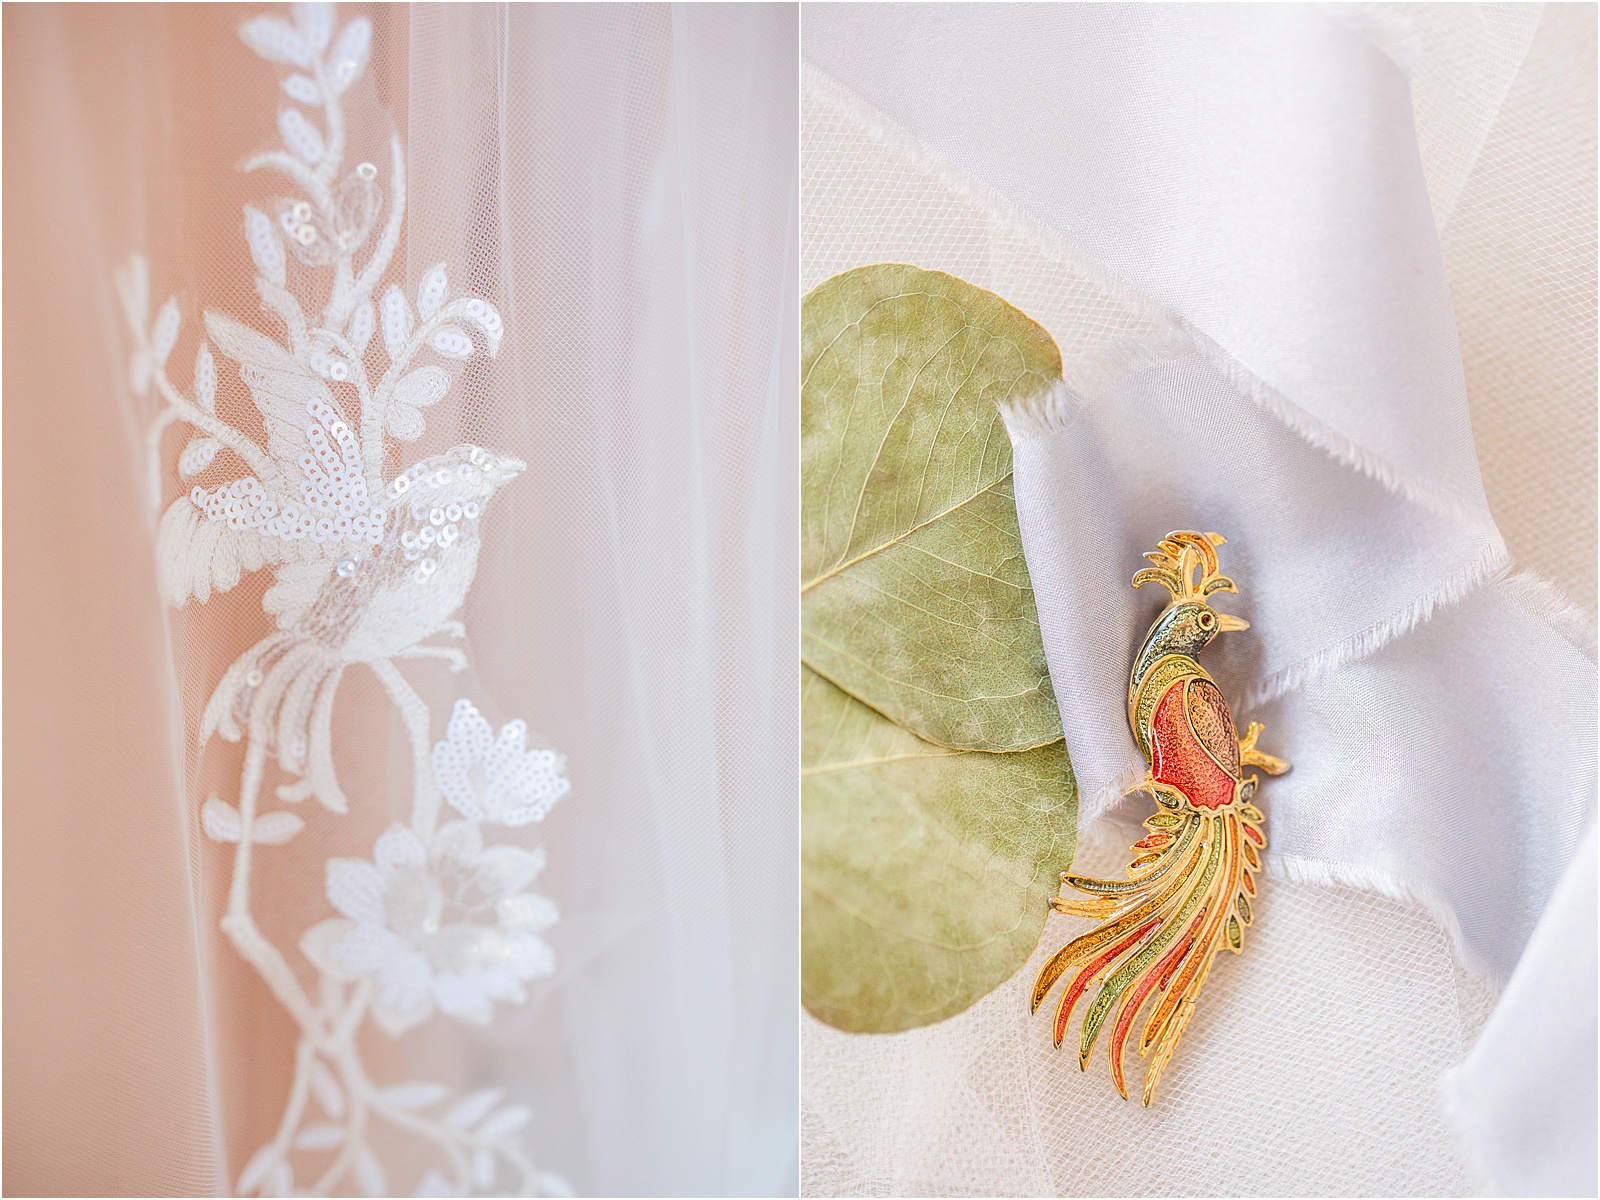 wedding veil with bird pin